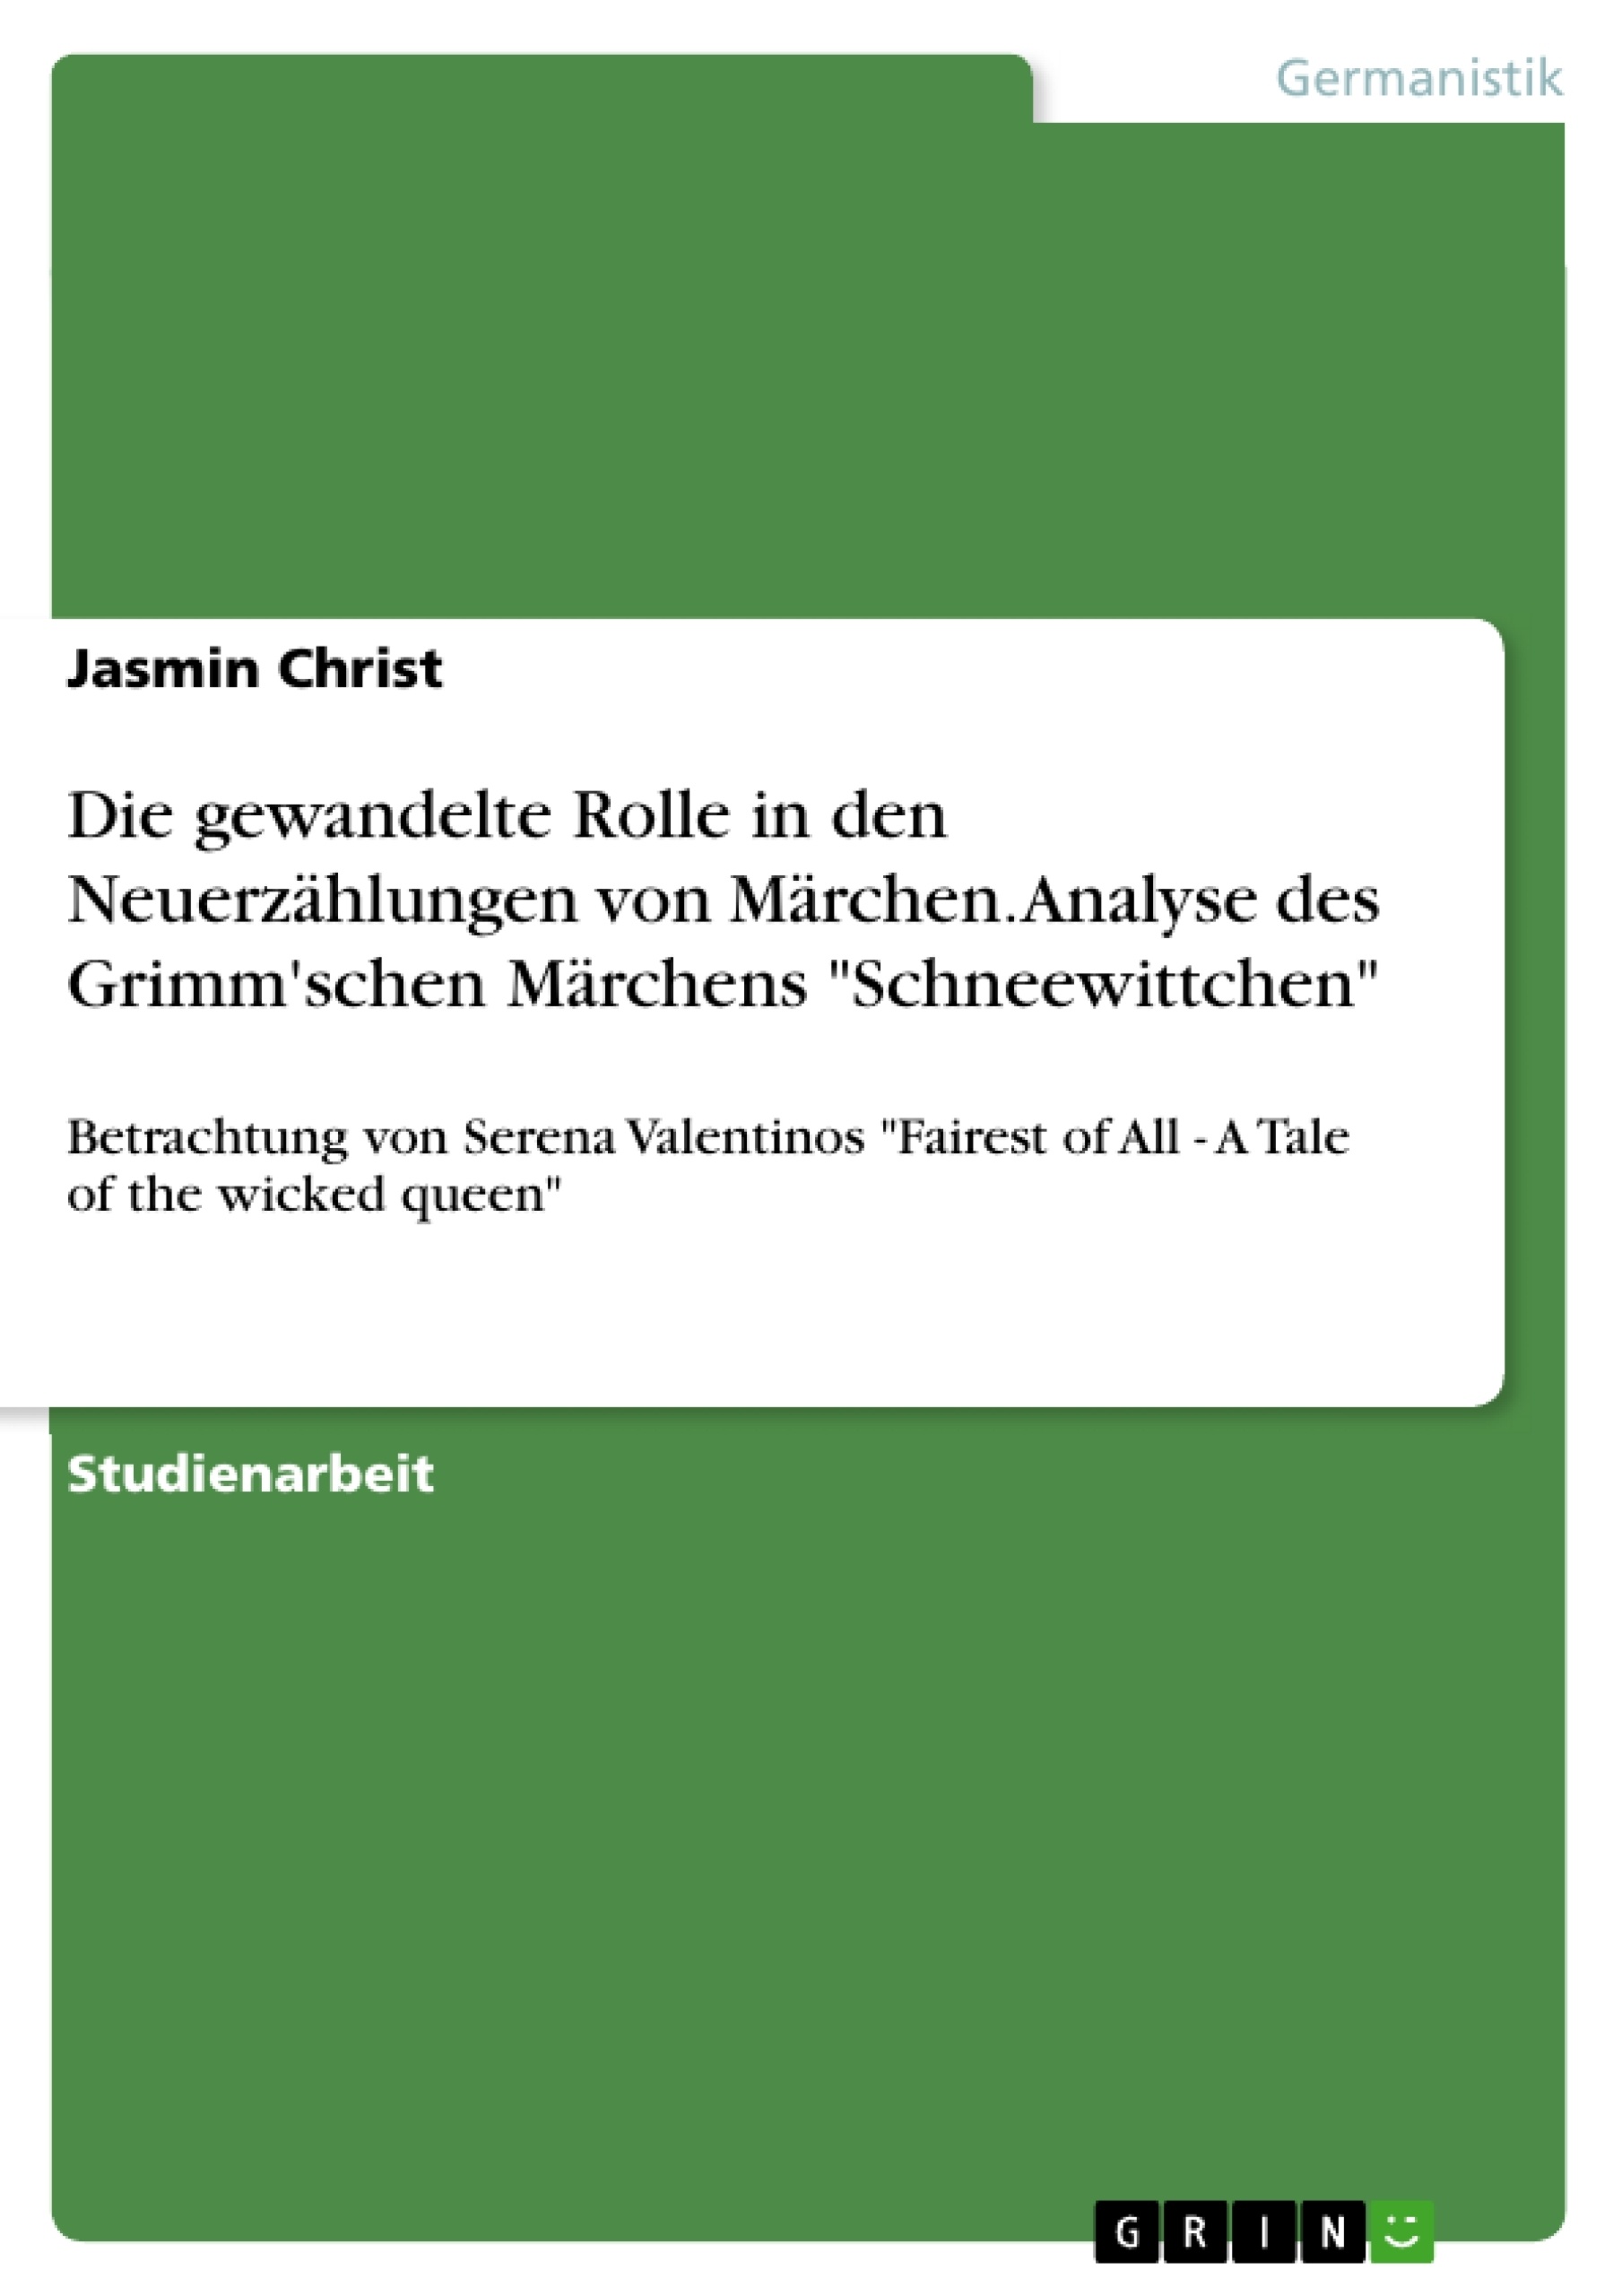 Titel: Die gewandelte Rolle in den Neuerzählungen von Märchen. Analyse des Grimm'schen Märchens "Schneewittchen"